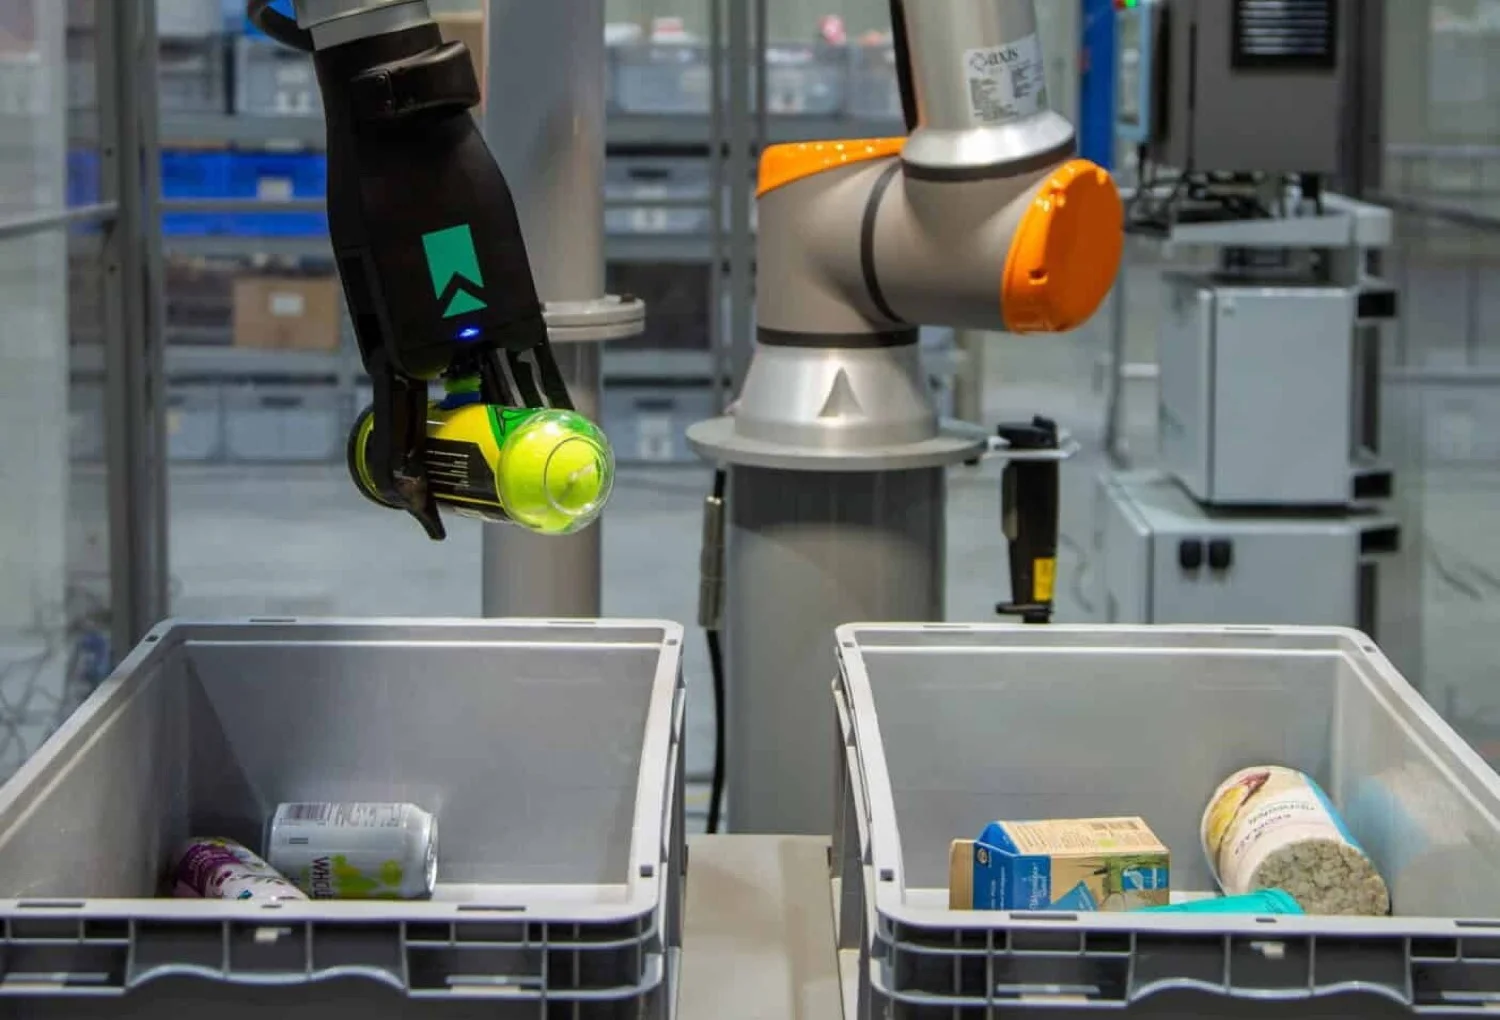 Brazo robótico con IA ordena productos como un humano